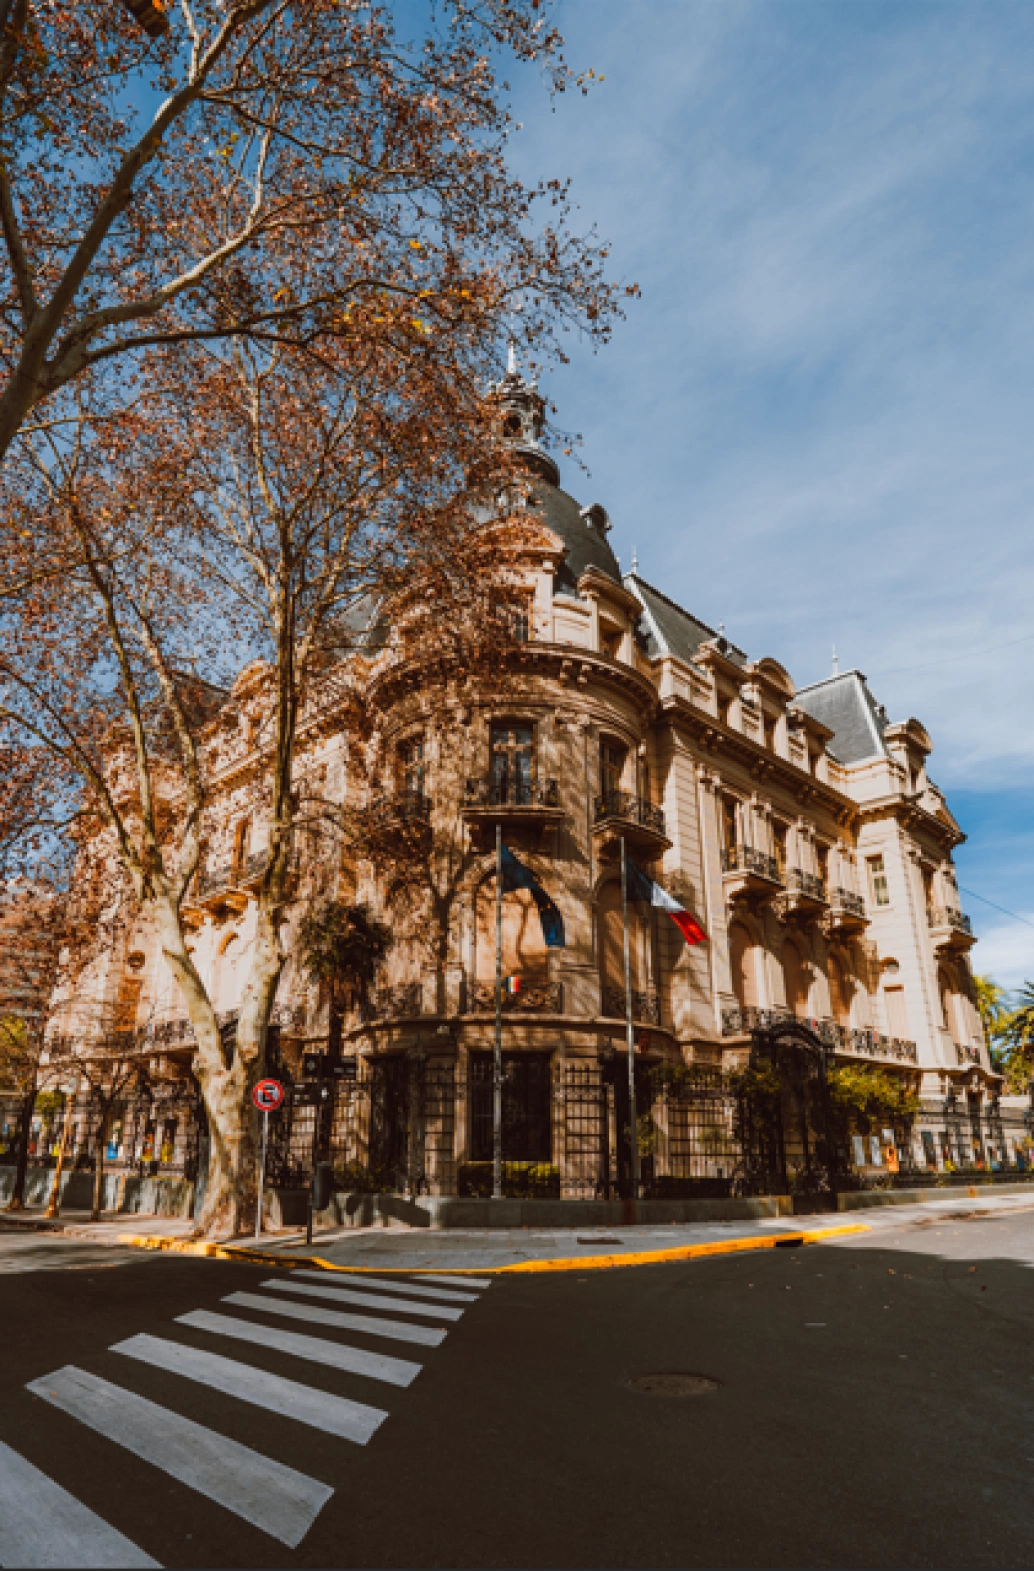 Fachada de um prédio antigo, clássico e em excelente estado de conservação numa esquina na cidade de Buenos Aires, Argentina.